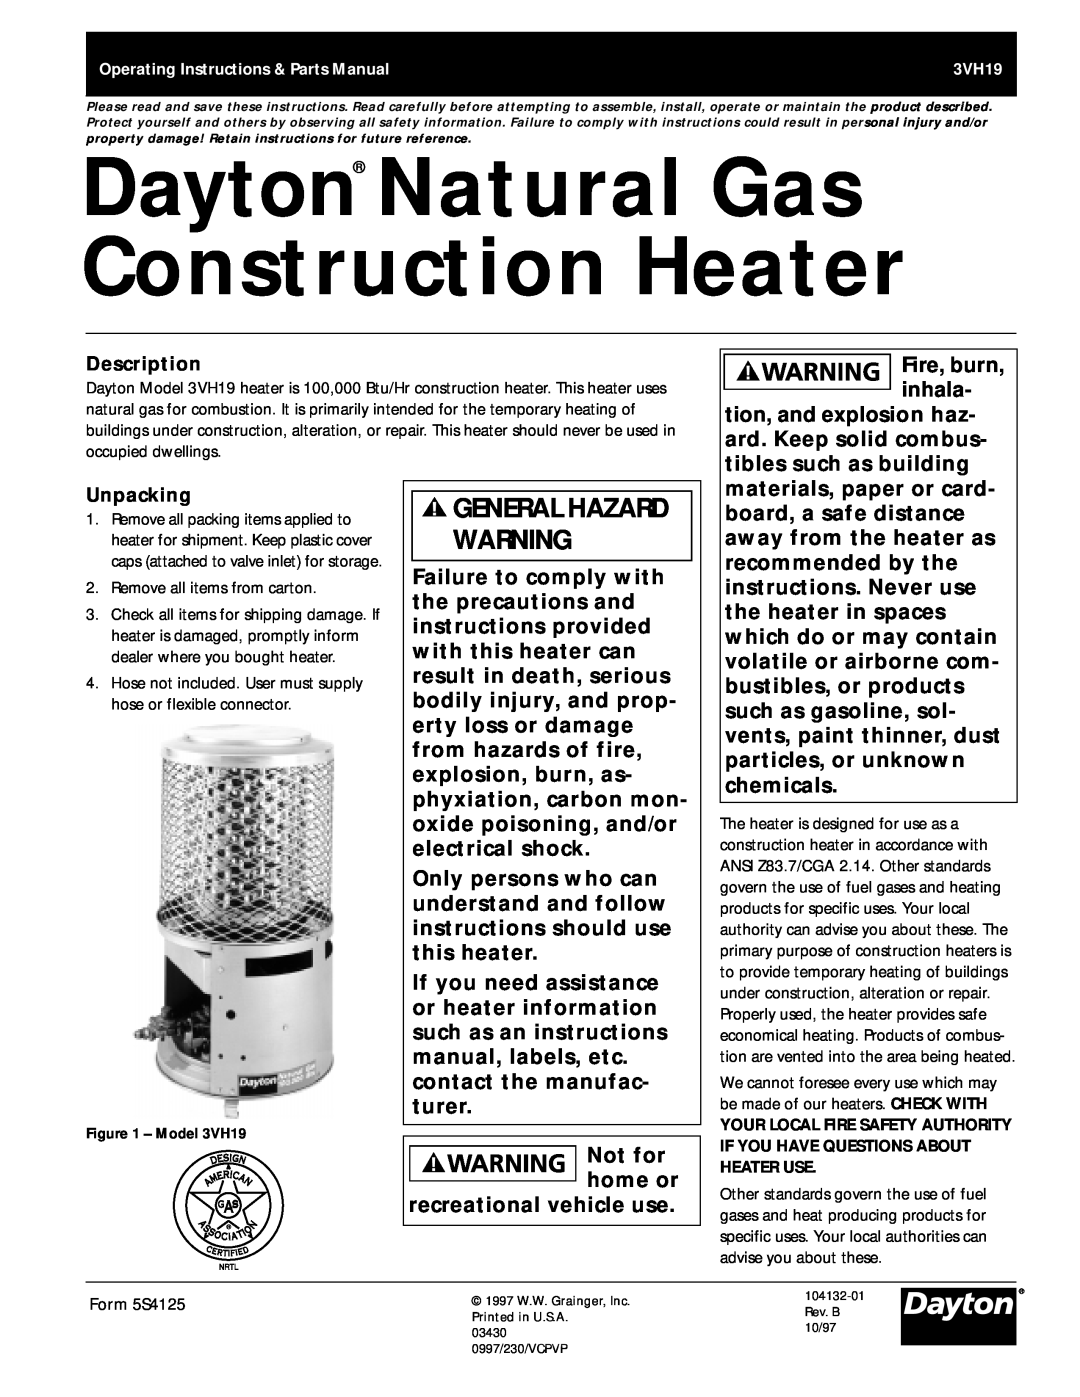 Dayton 3VH19 manual Dayton Natural Gas Construction Heater, General Hazard Warning 